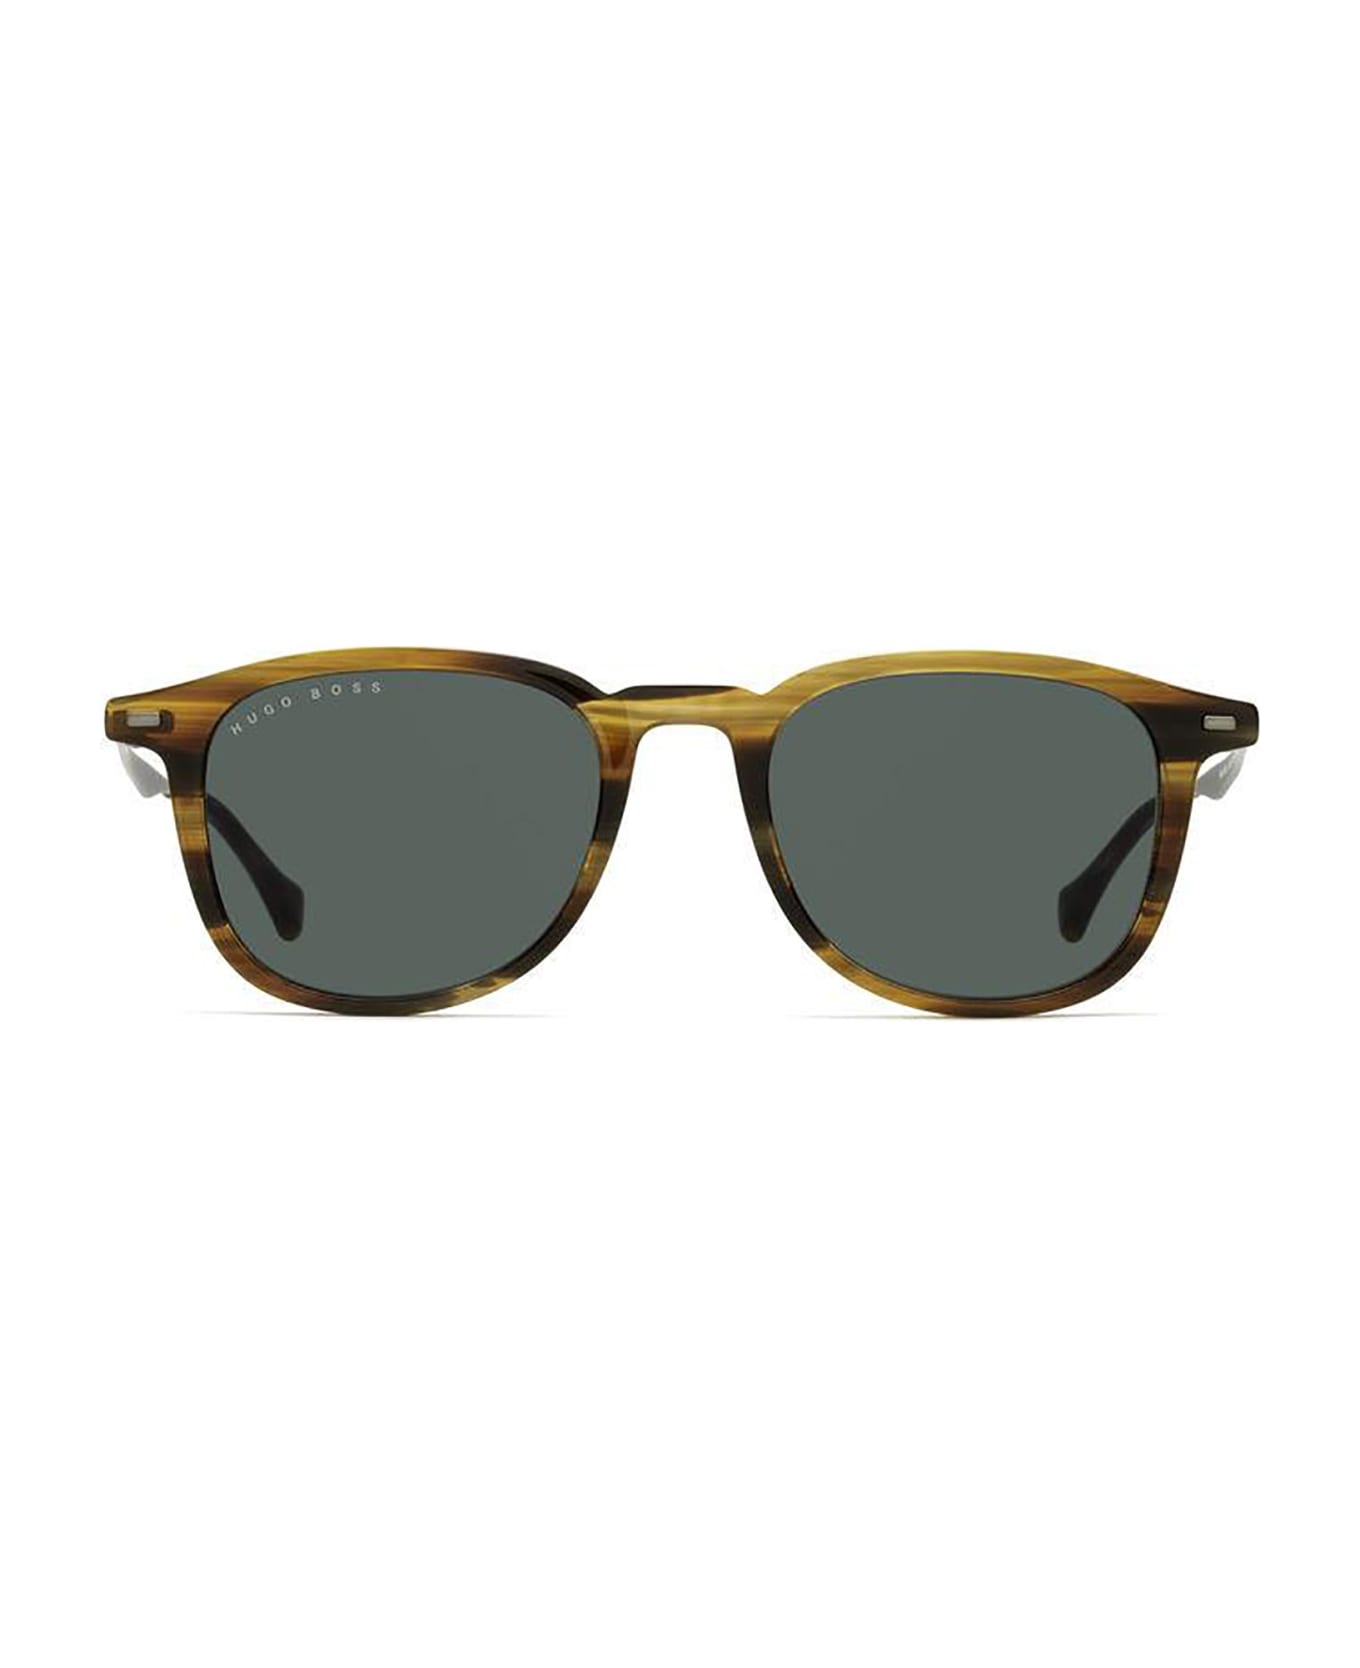 Hugo Boss BOSS 1094/S Sunglasses - /qt Brown Horn サングラス